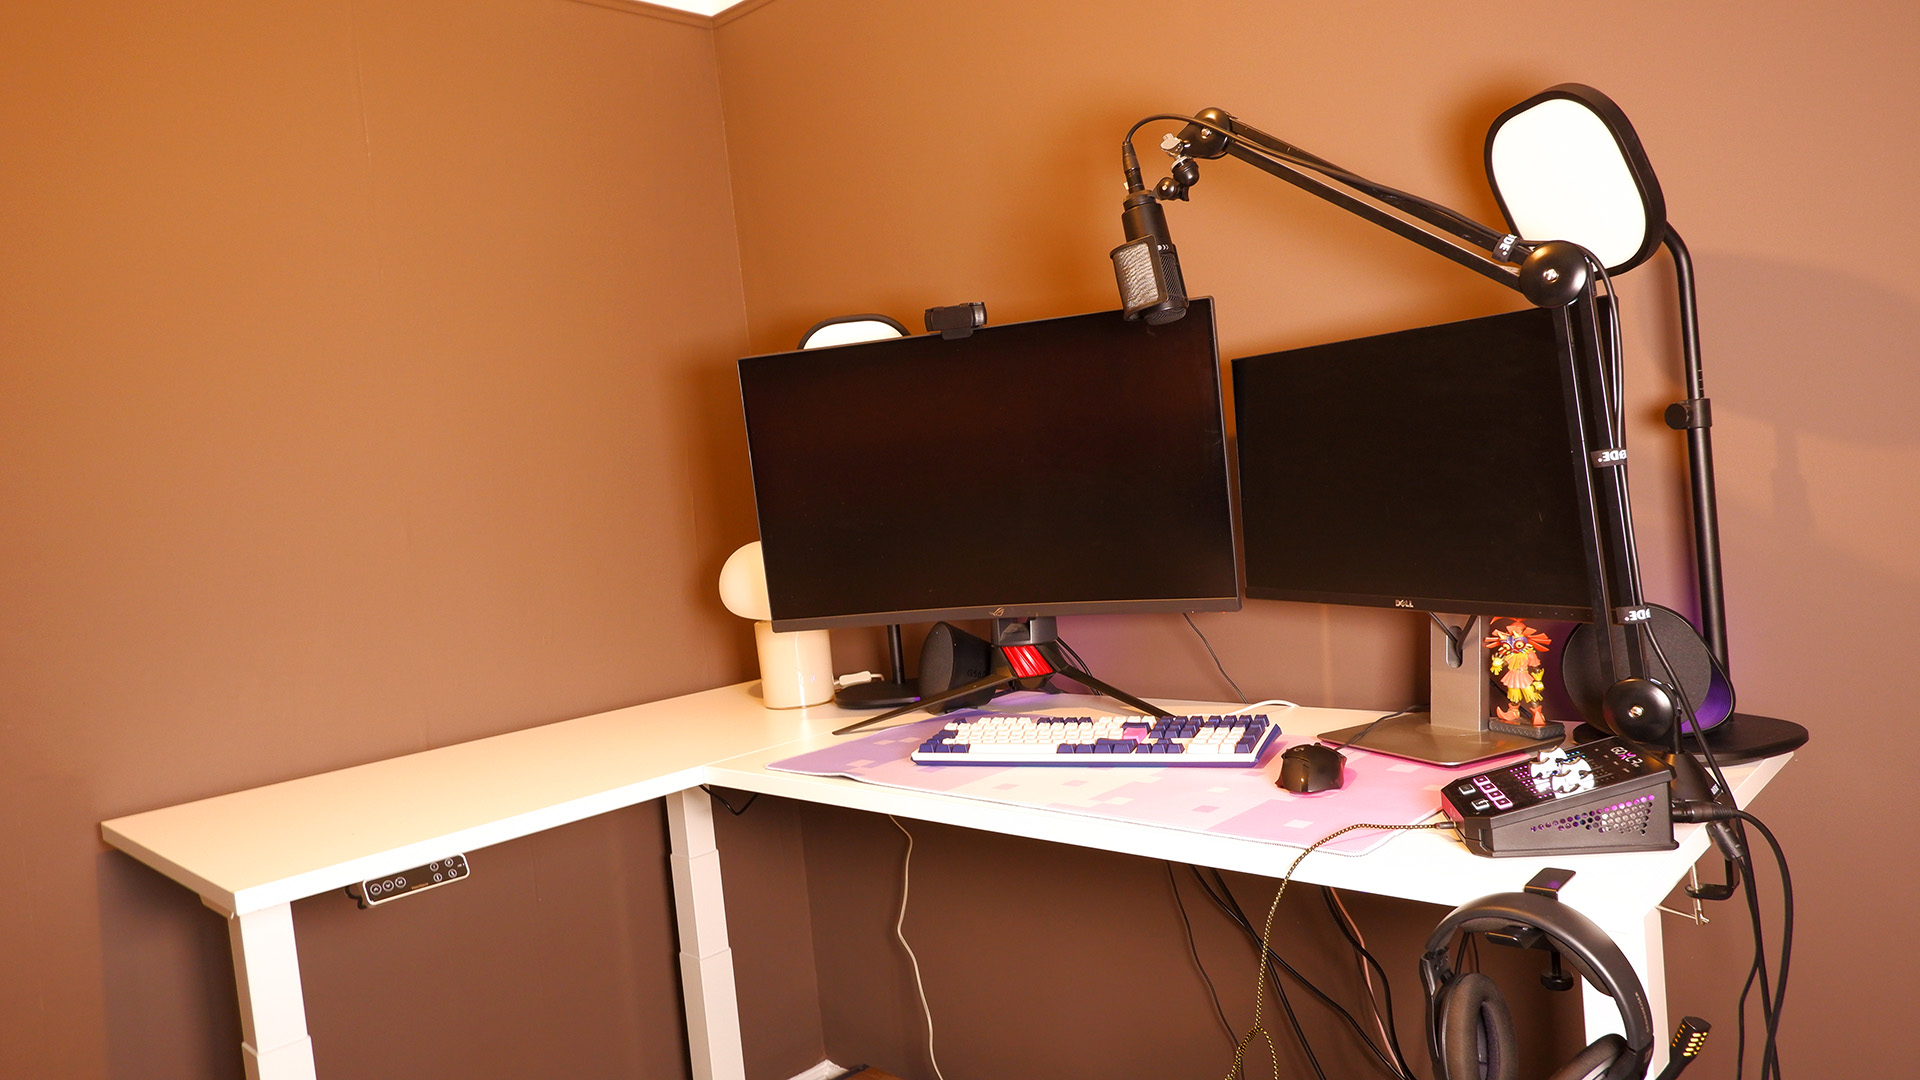 Flexispot E7L desk set-up in an office.